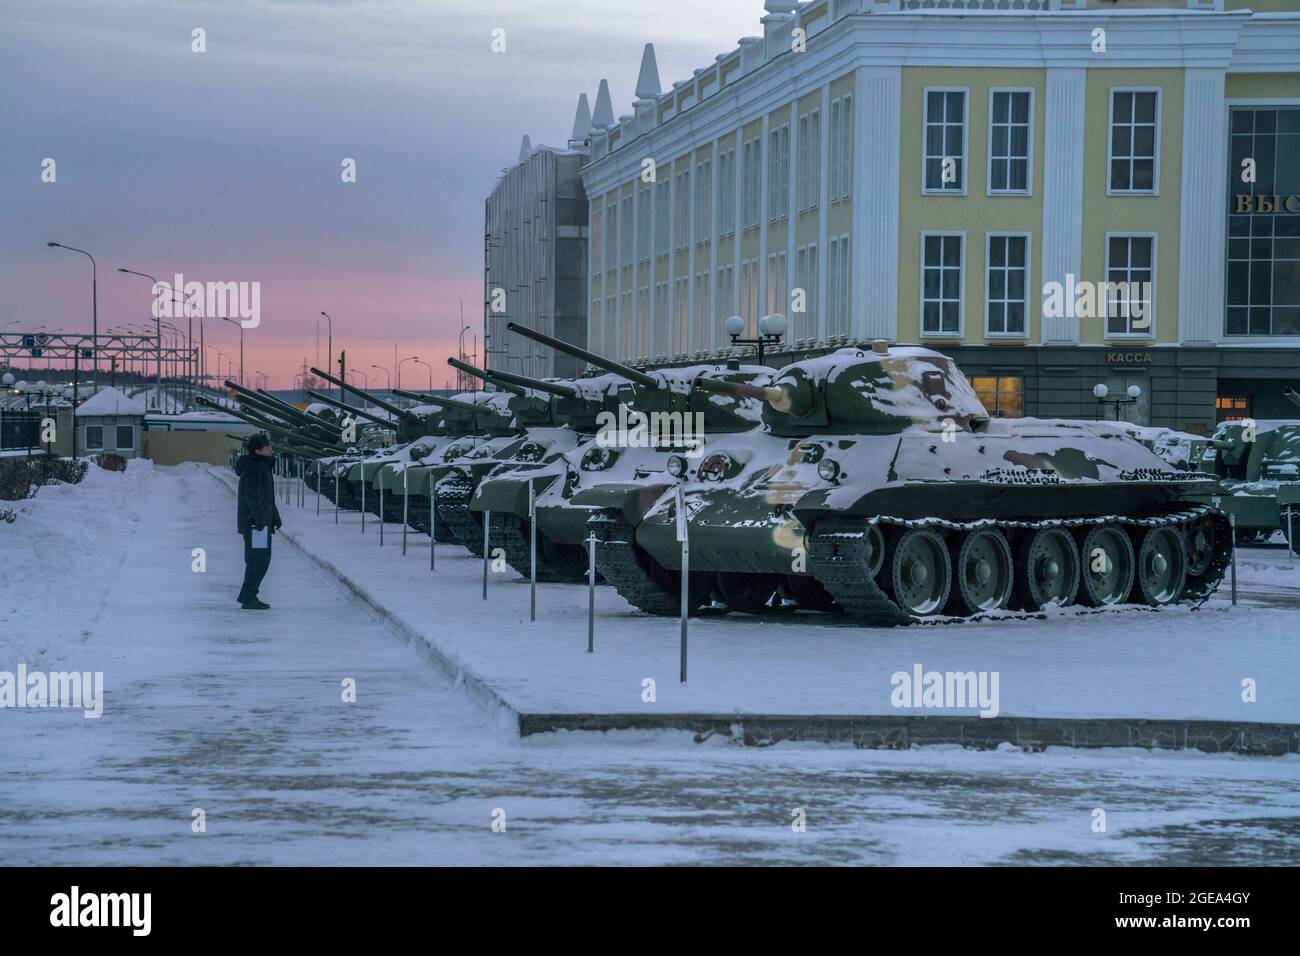 Le file dei carri armati T-34 della seconda guerra mondiale fanno parte di una delle più grandi collezioni di attrezzature militari storiche del mondo in Ekaterinburg, in Russia. Foto Stock